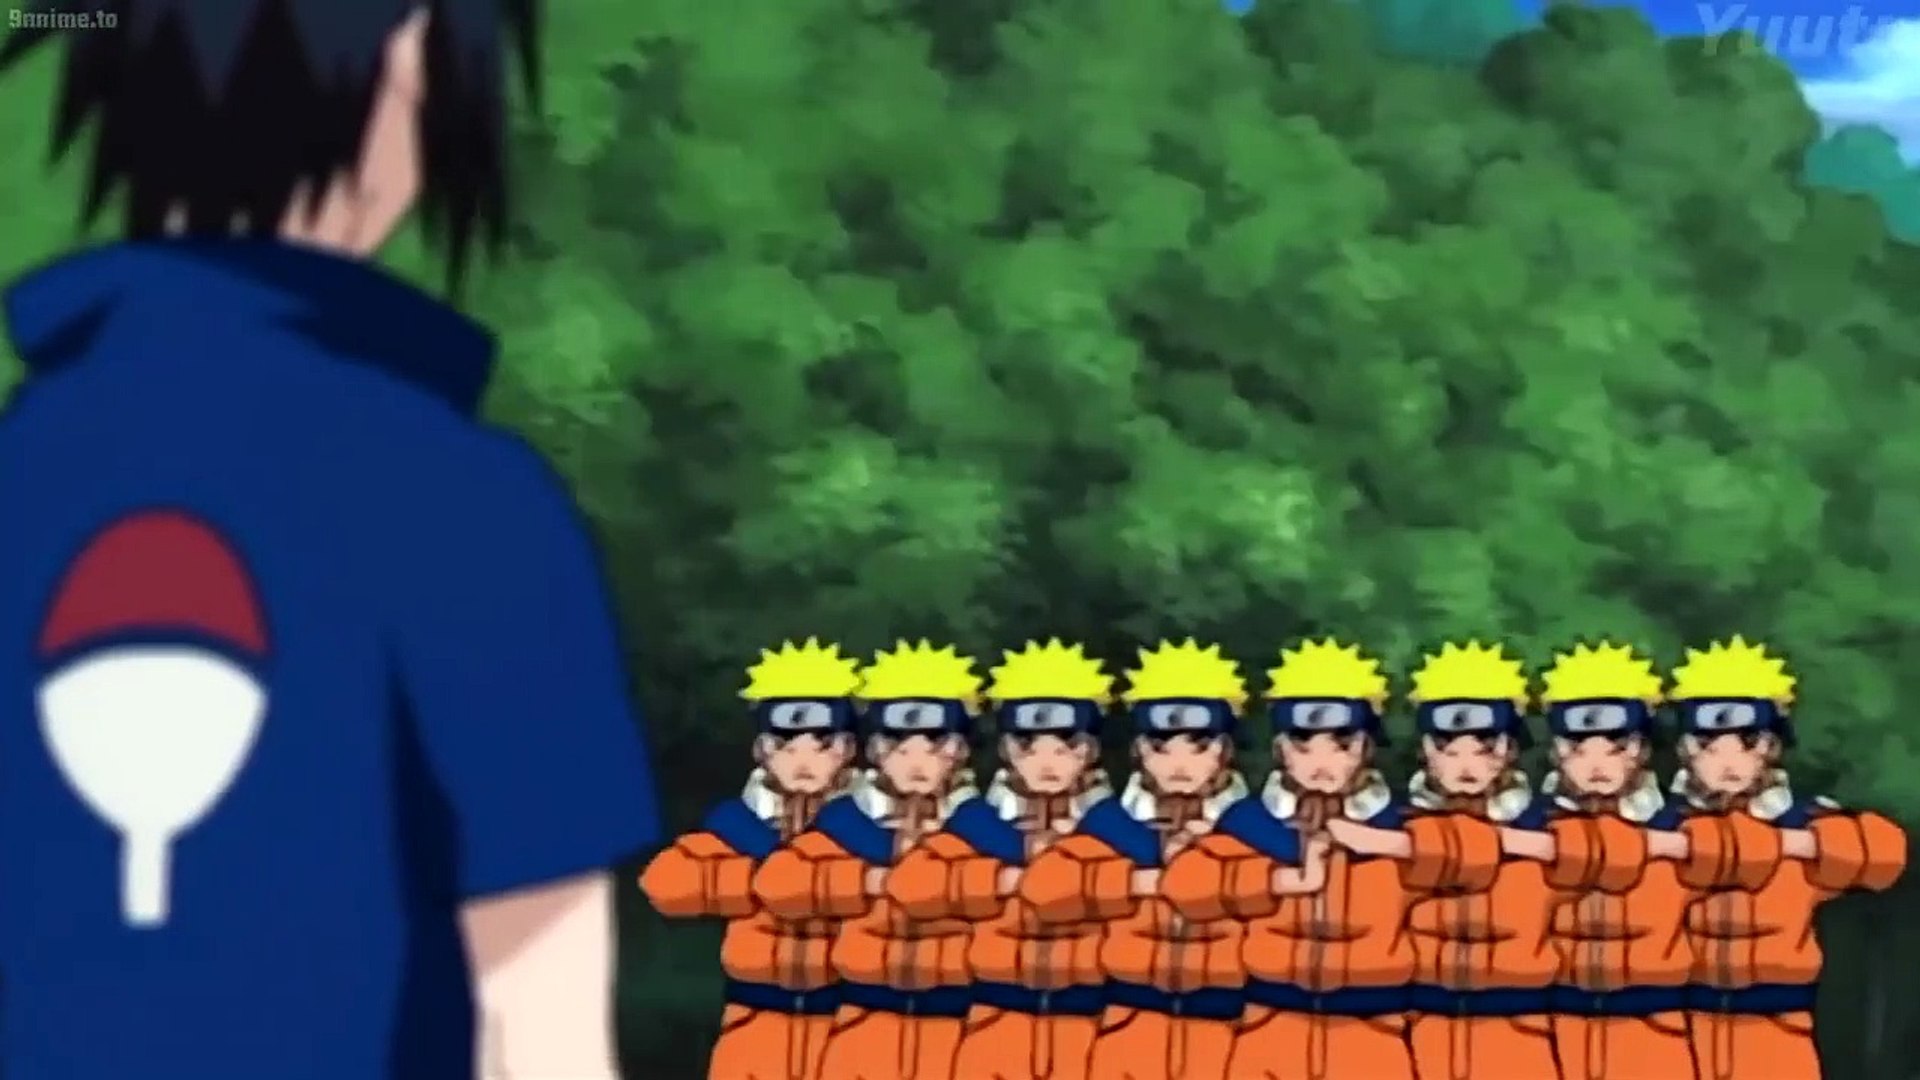 Naruto e Sasuke clássico wallpaper